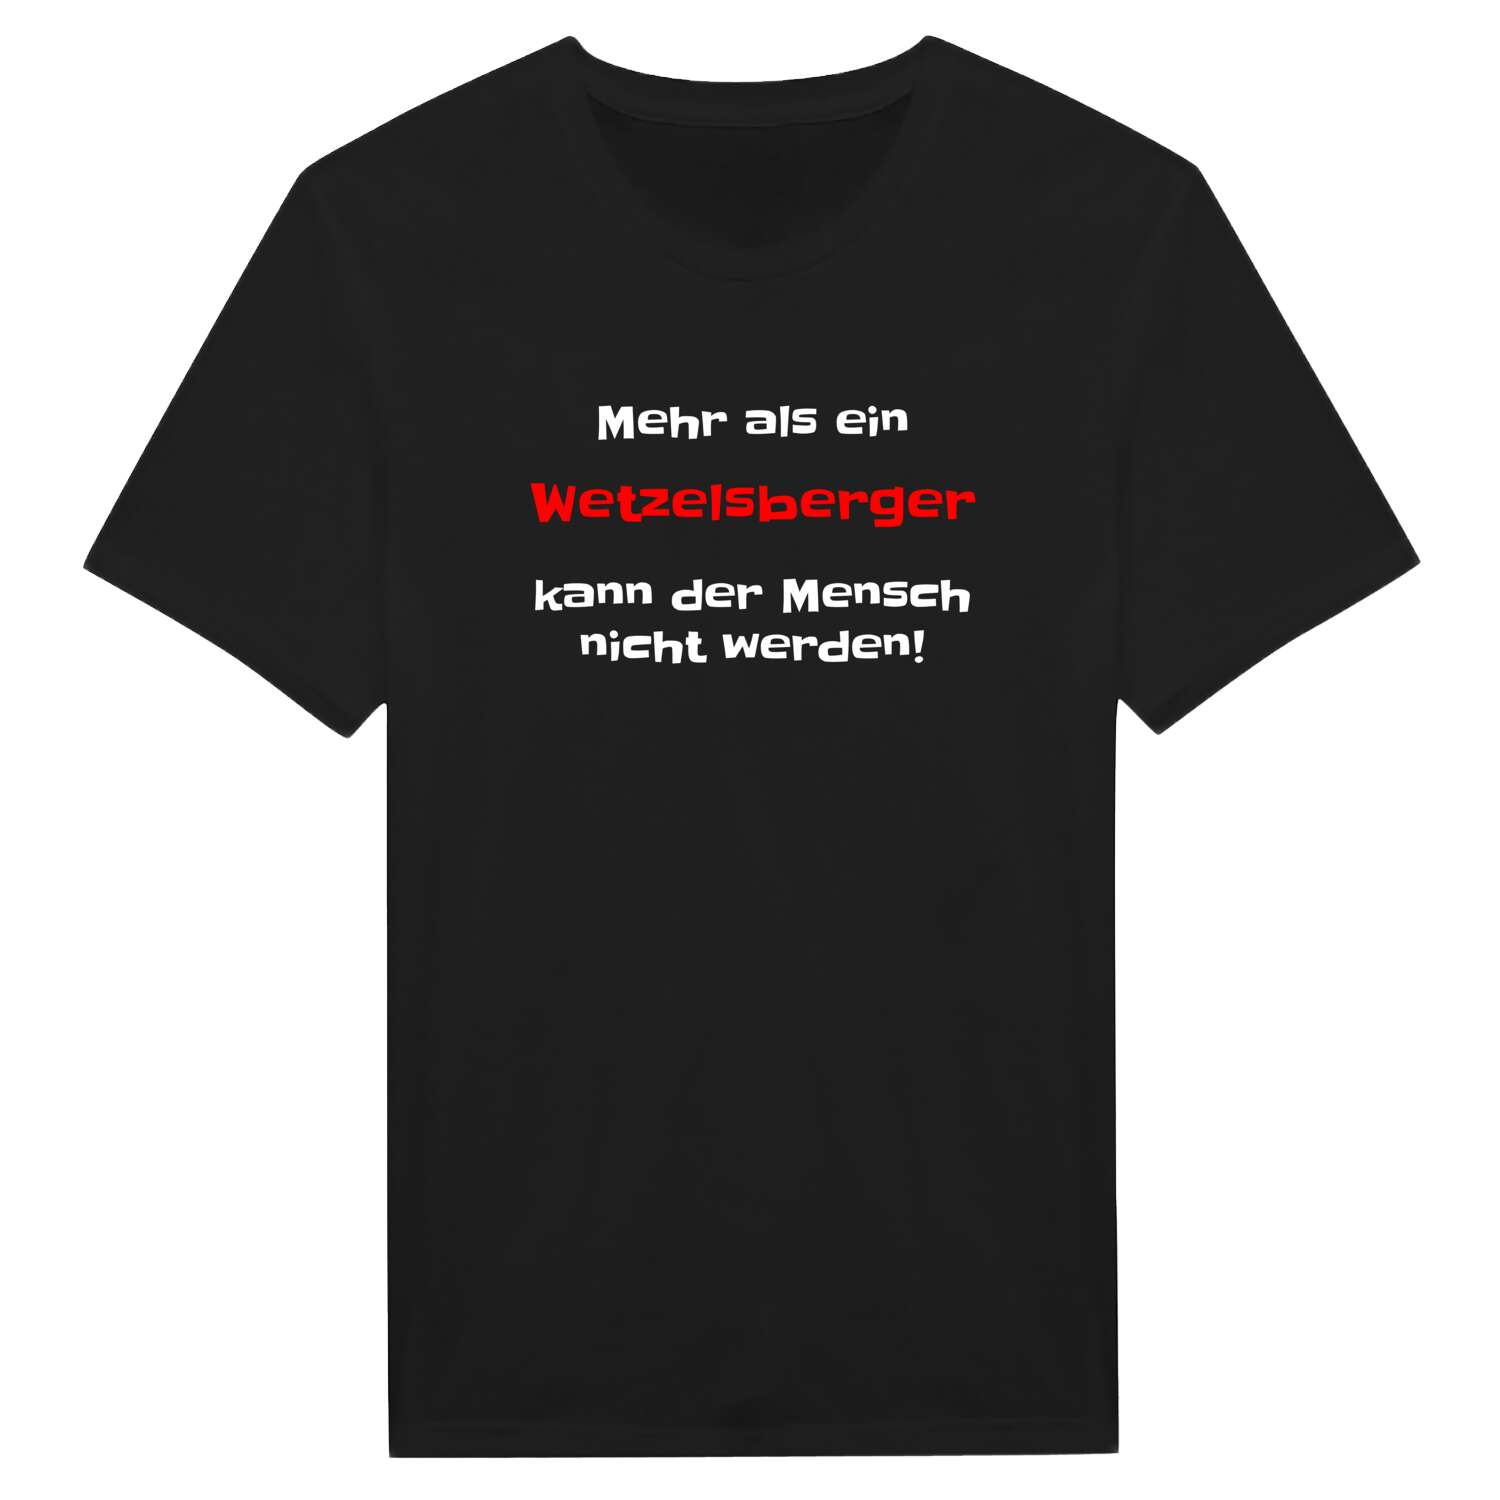 Wetzelsberg T-Shirt »Mehr als ein«